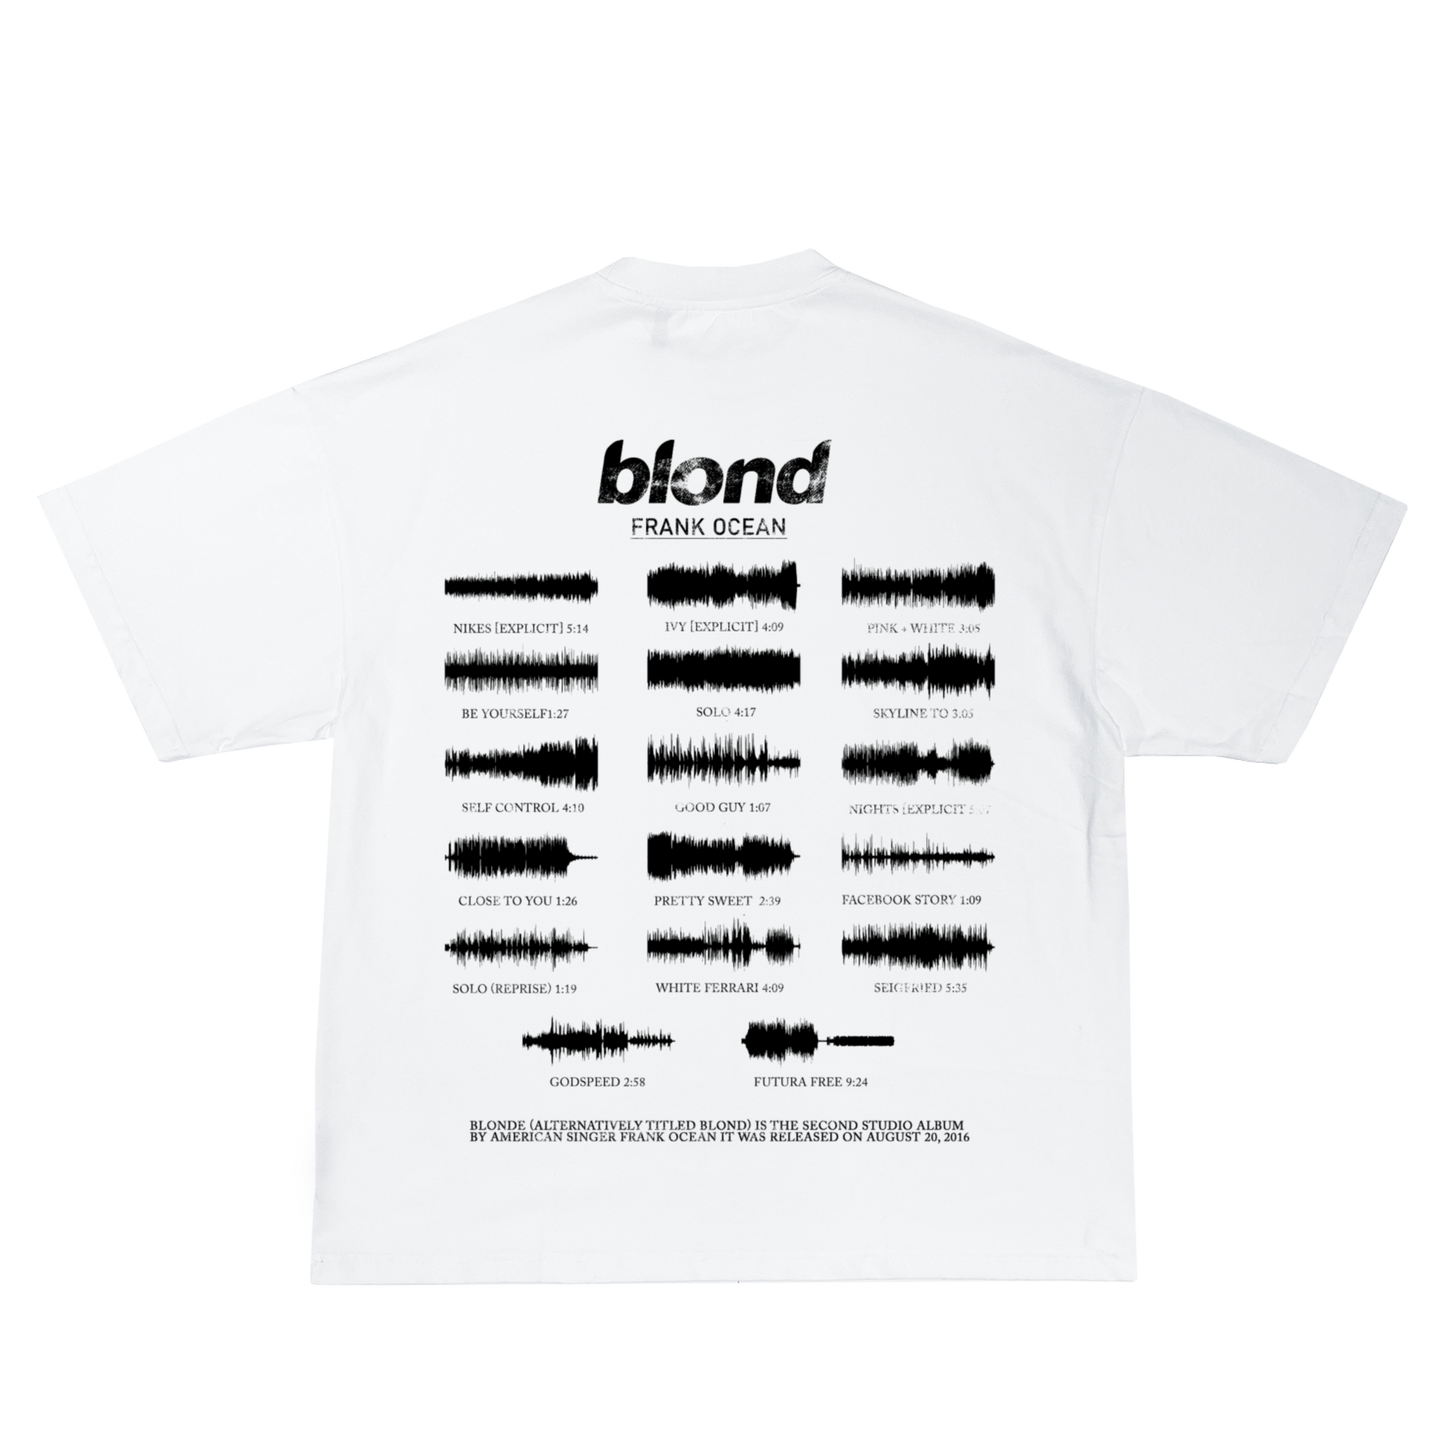 frank ocean blond shirt